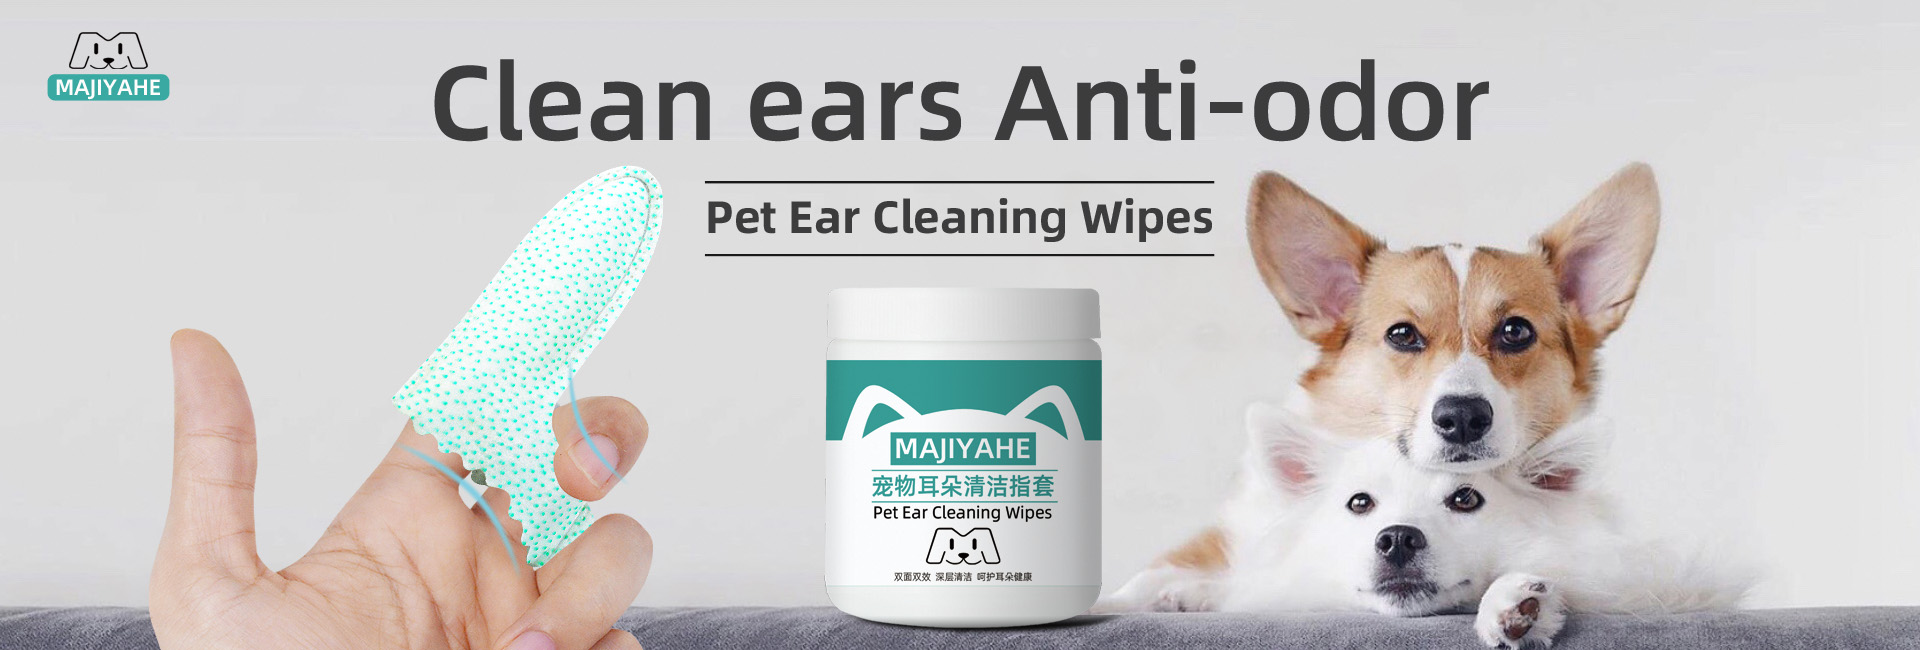 pet ear wipes